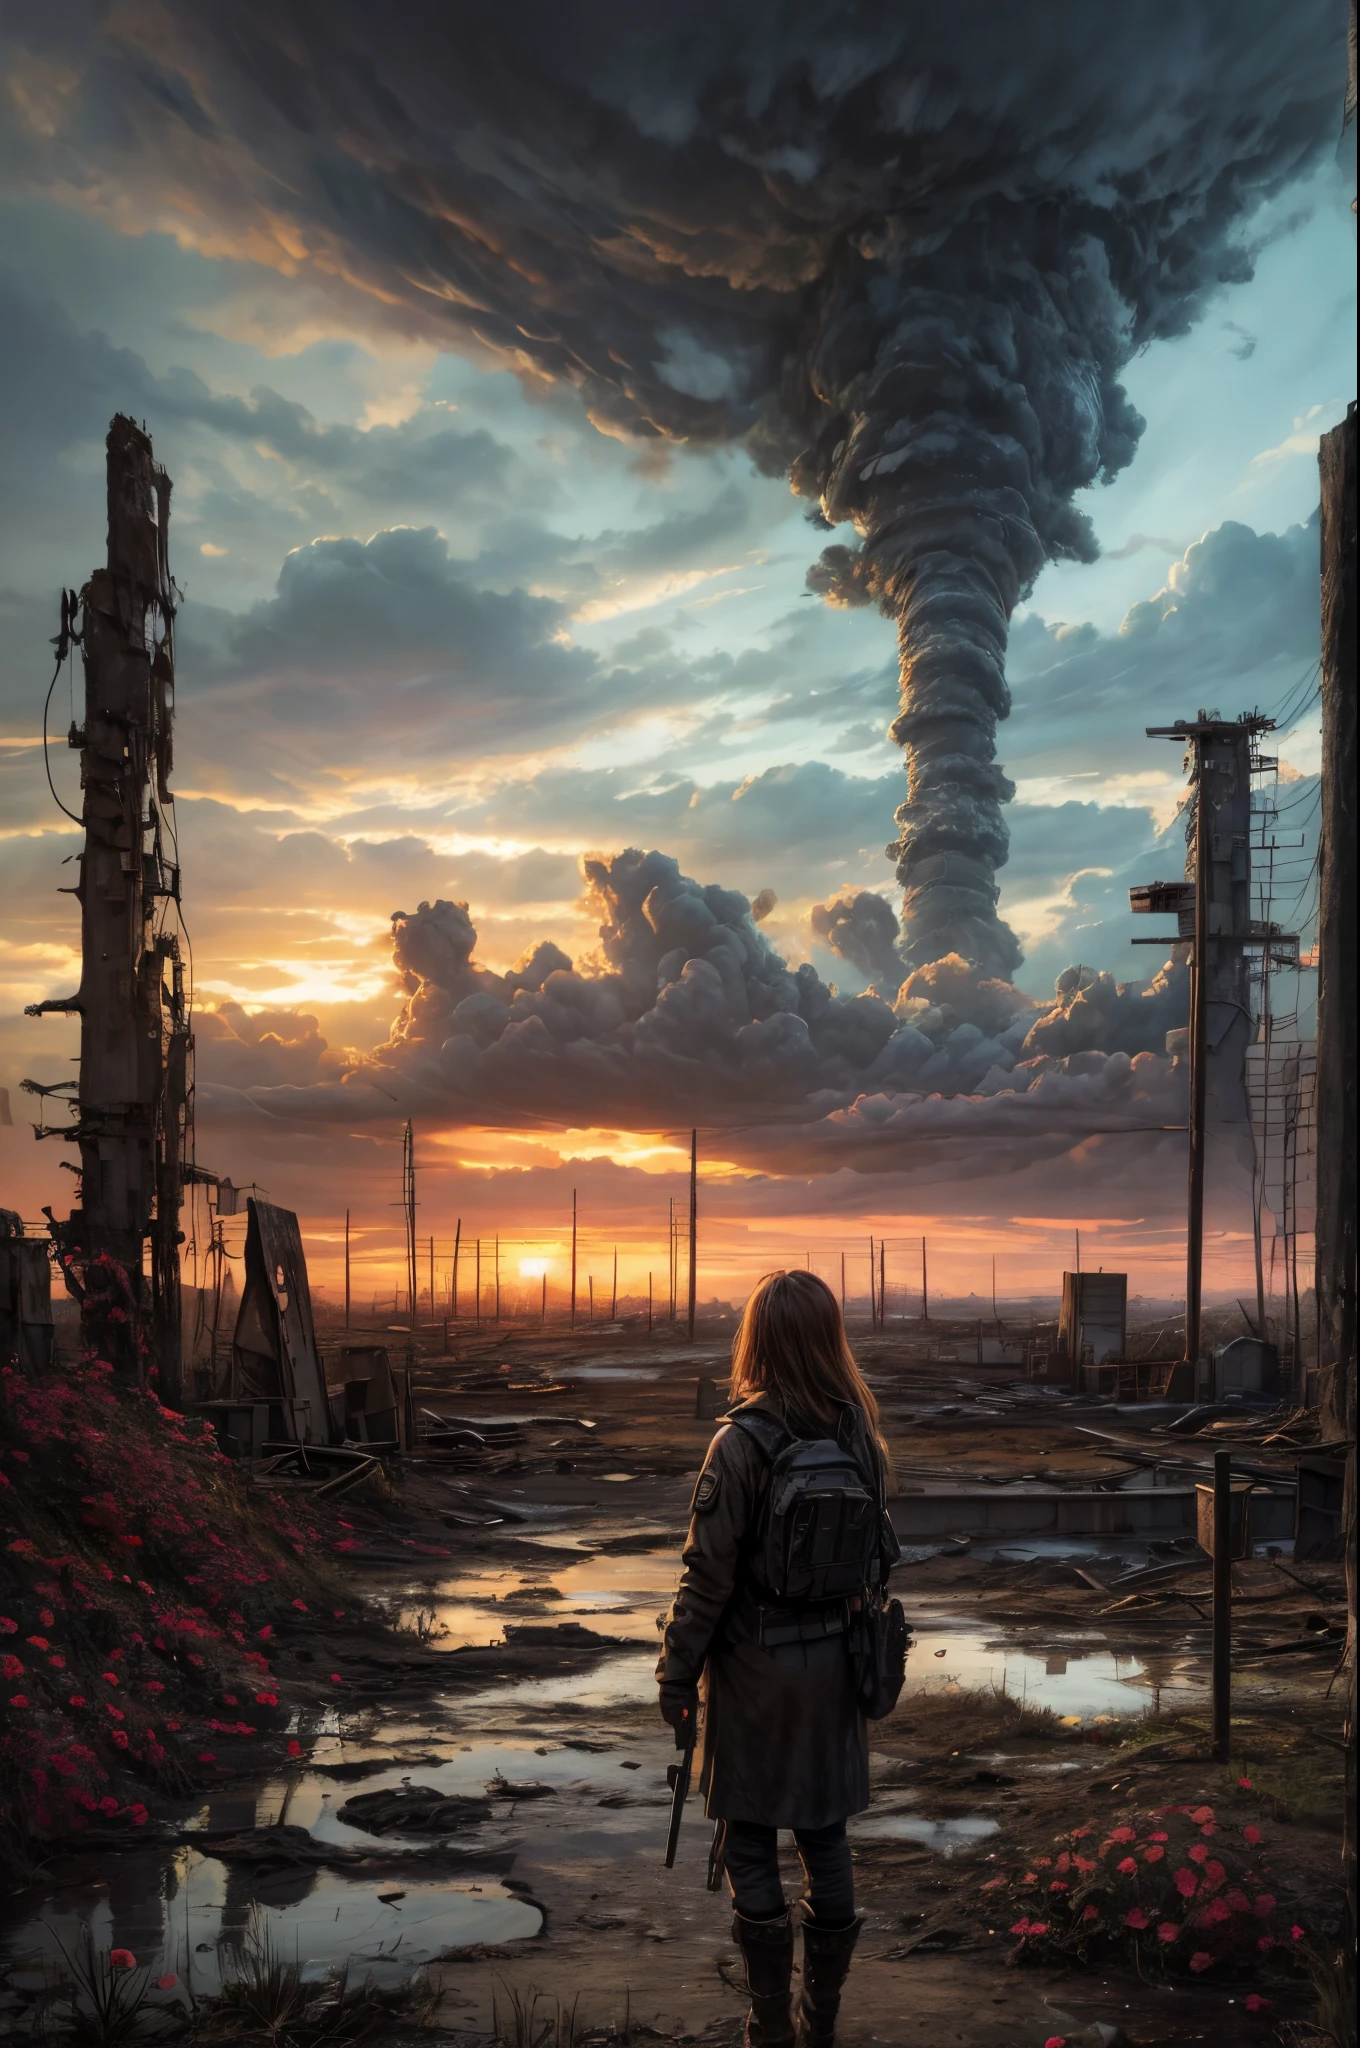 "pintura al óleo, ((resiliente)) Chica parada en medio de ruinas de un páramo nuclear, flores delicadas que emergen de la desolación, Nubes siniestras que proyectan sombras, ((belleza inquietante)), obra maestra post-apocalíptica"